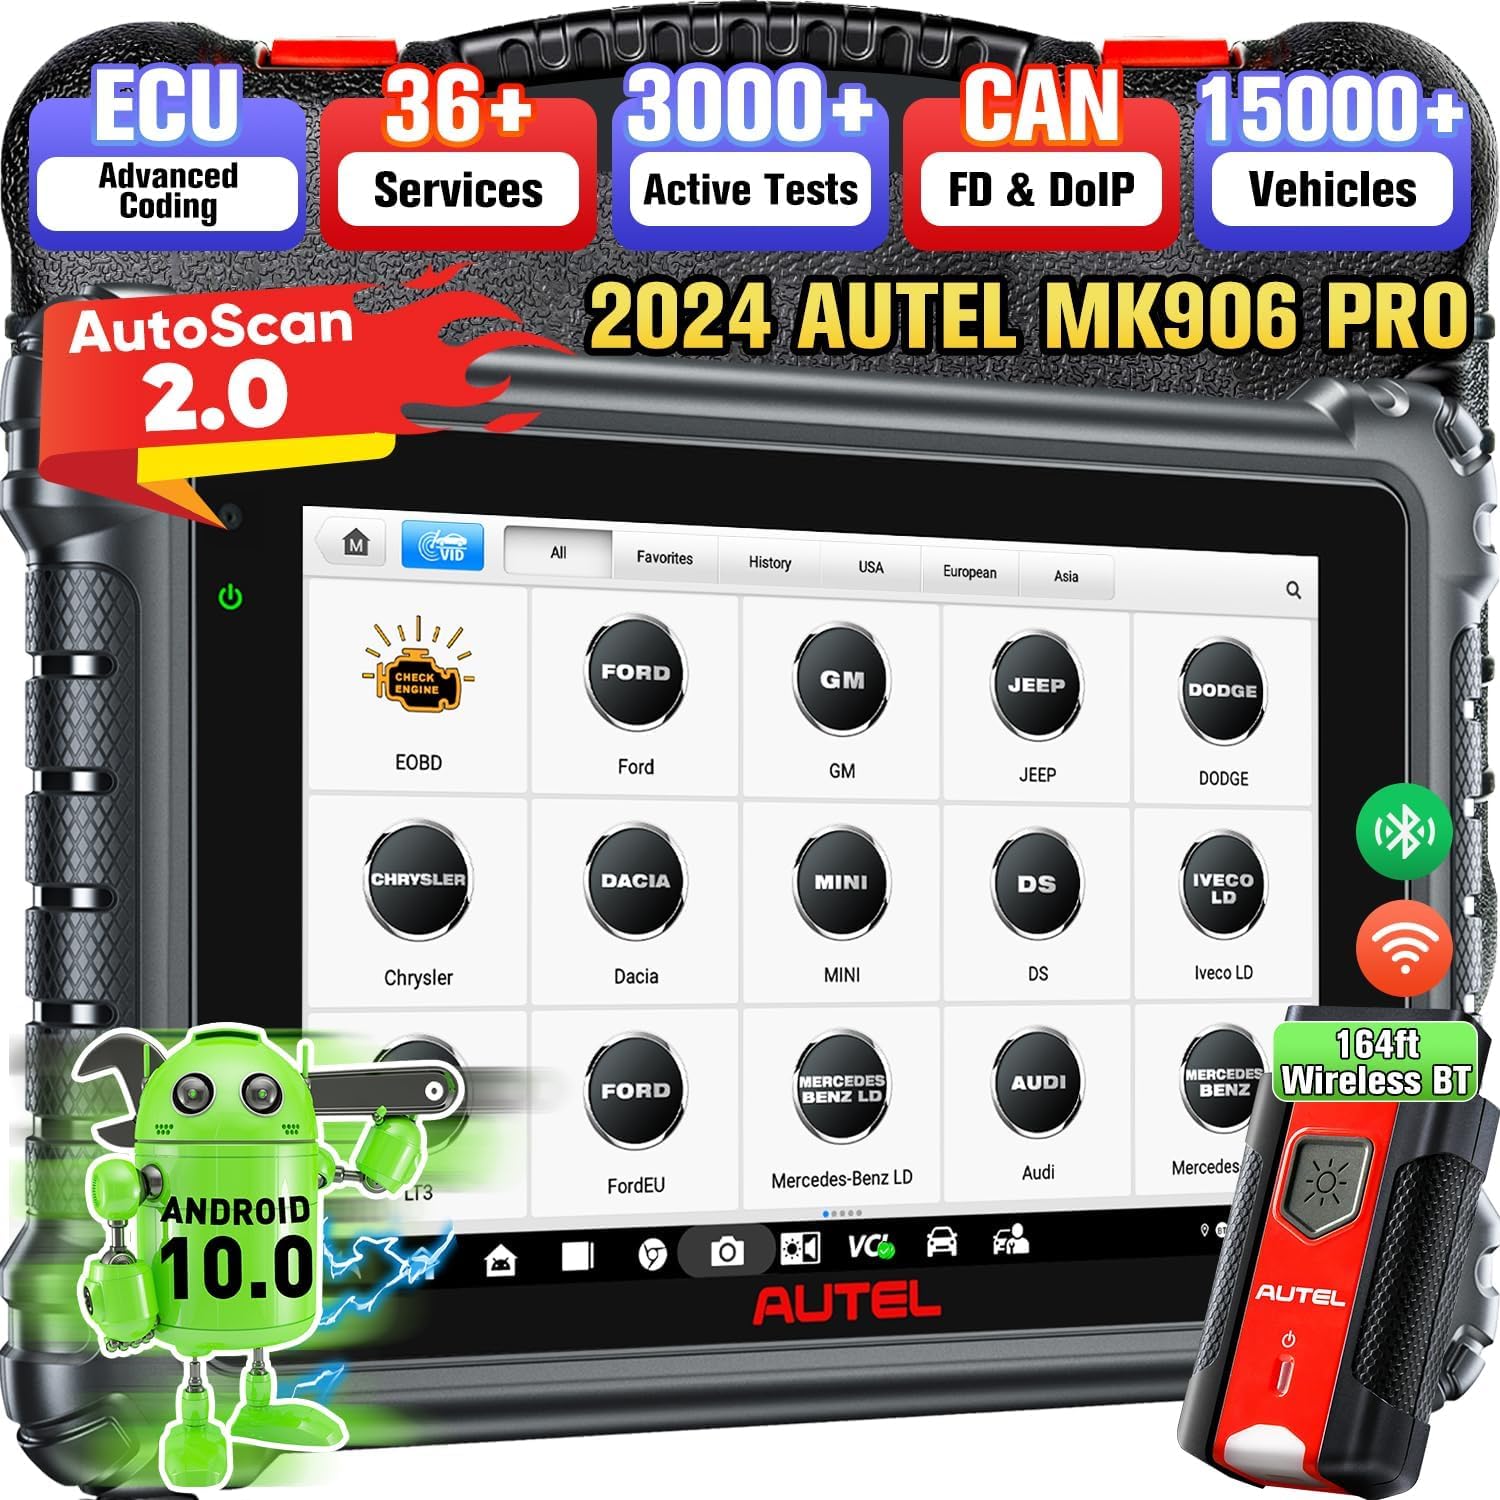 Autel MaxiCOM MK906 PRO Autodiagnosetool, 2024 Gleiche Funktionen wie MS906 Pro/ MK906 Pro, Upgrade von MS906BT/ MK908, ECU-Codierung, bidirektionale Steuerung, 36+ Dienste, OE All System Scan von Autel